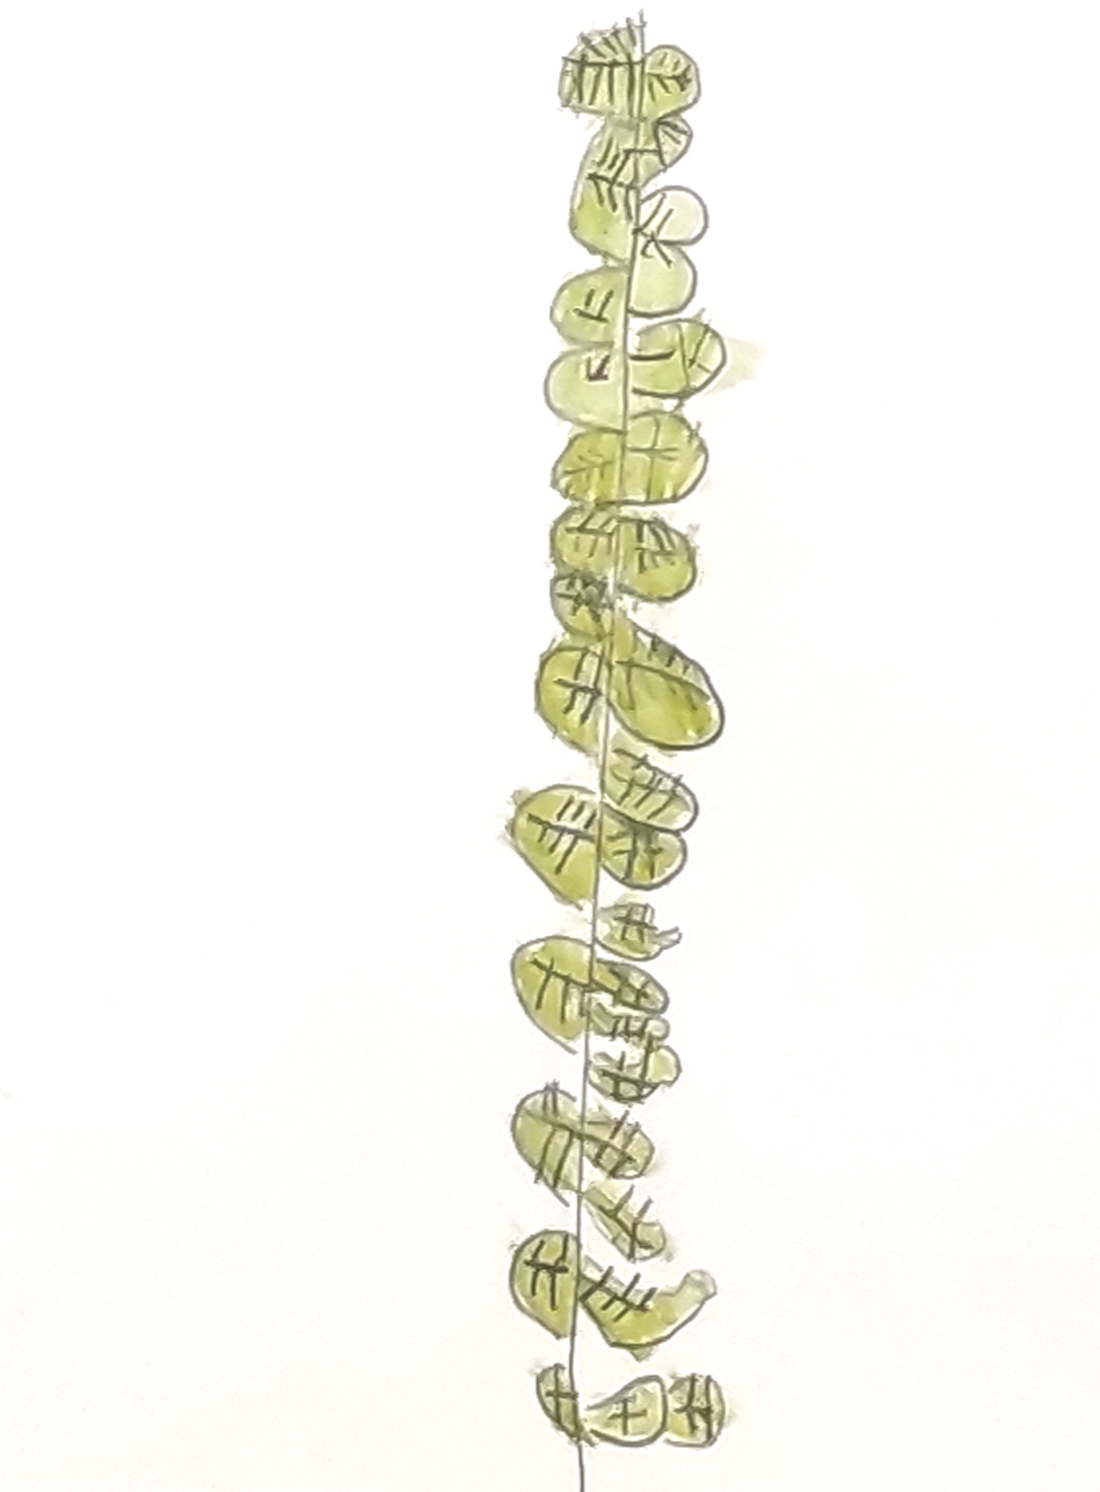 Dibujo de una rama de acacia realizado por un niño de 4 años, alumno del Centro Educativo Gençana